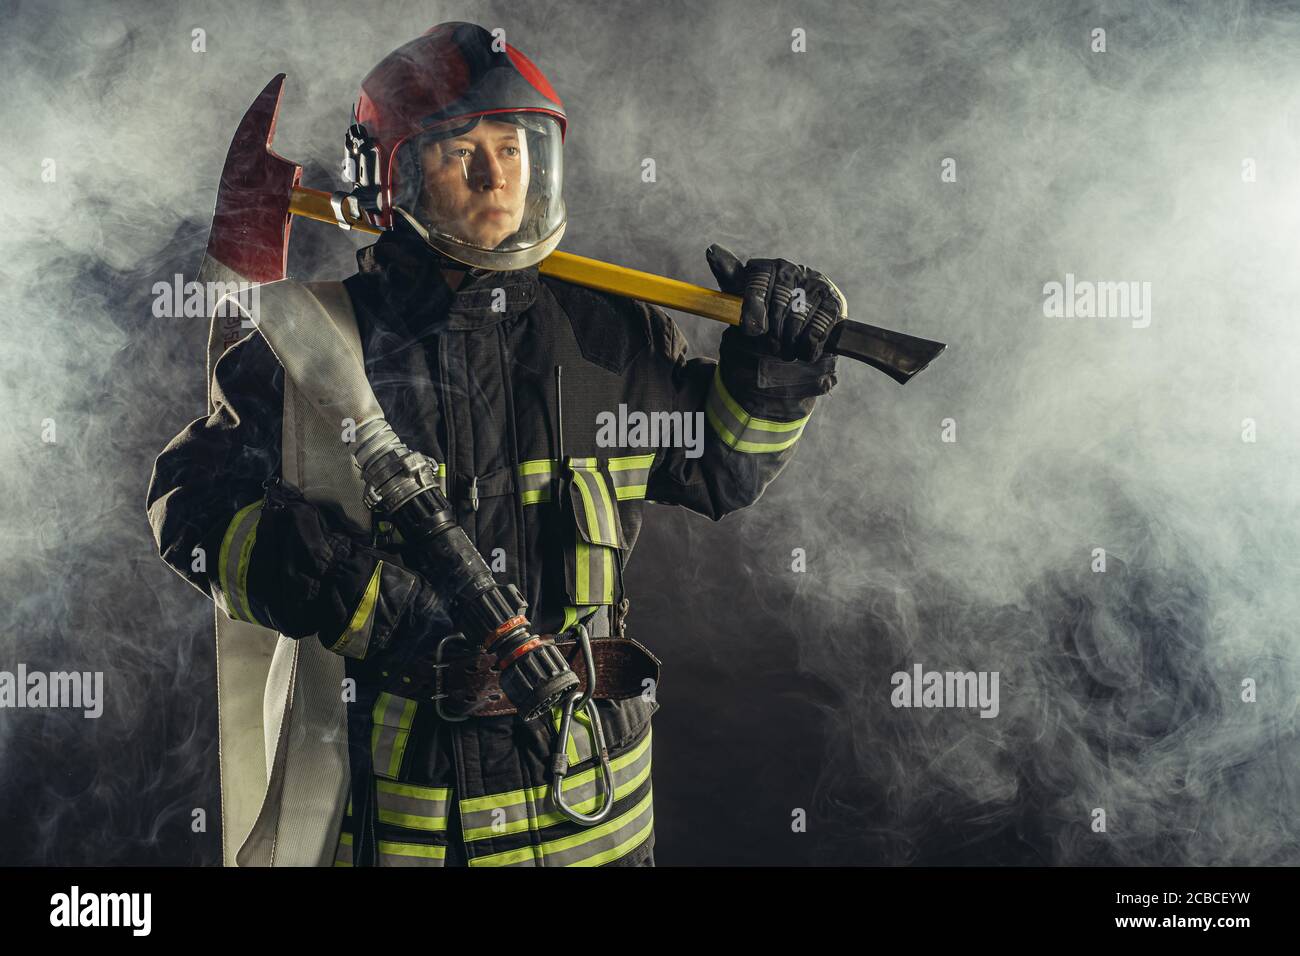 giovane vigile del fuoco caucasico che tiene il martello, rischiando la vita per salvare le persone dal fuoco, indossando uniforme protettiva Foto Stock